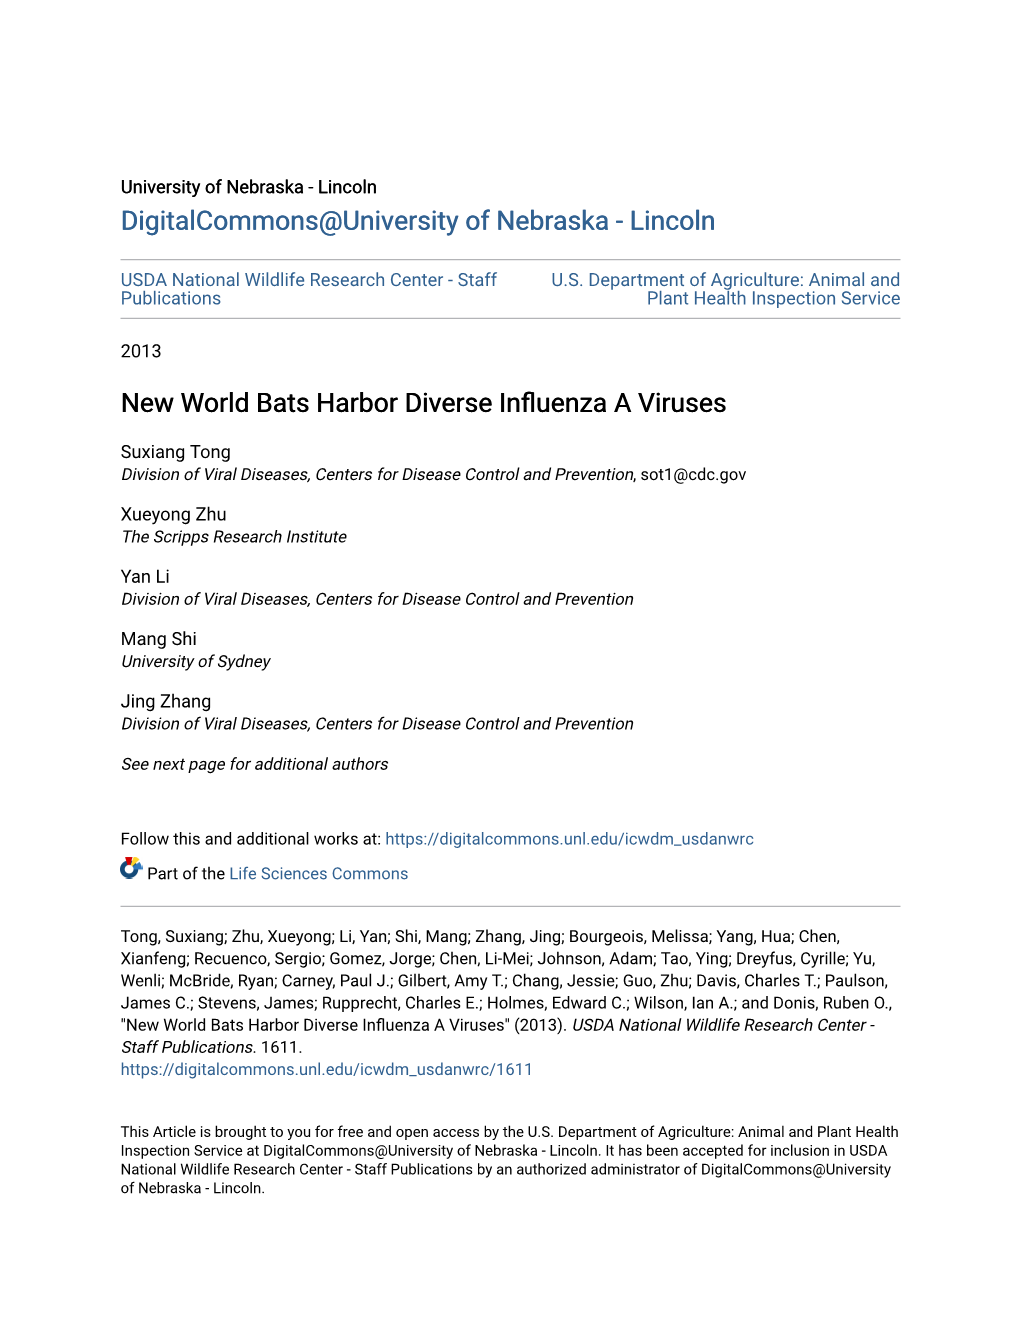 New World Bats Harbor Diverse Influenza a Viruses